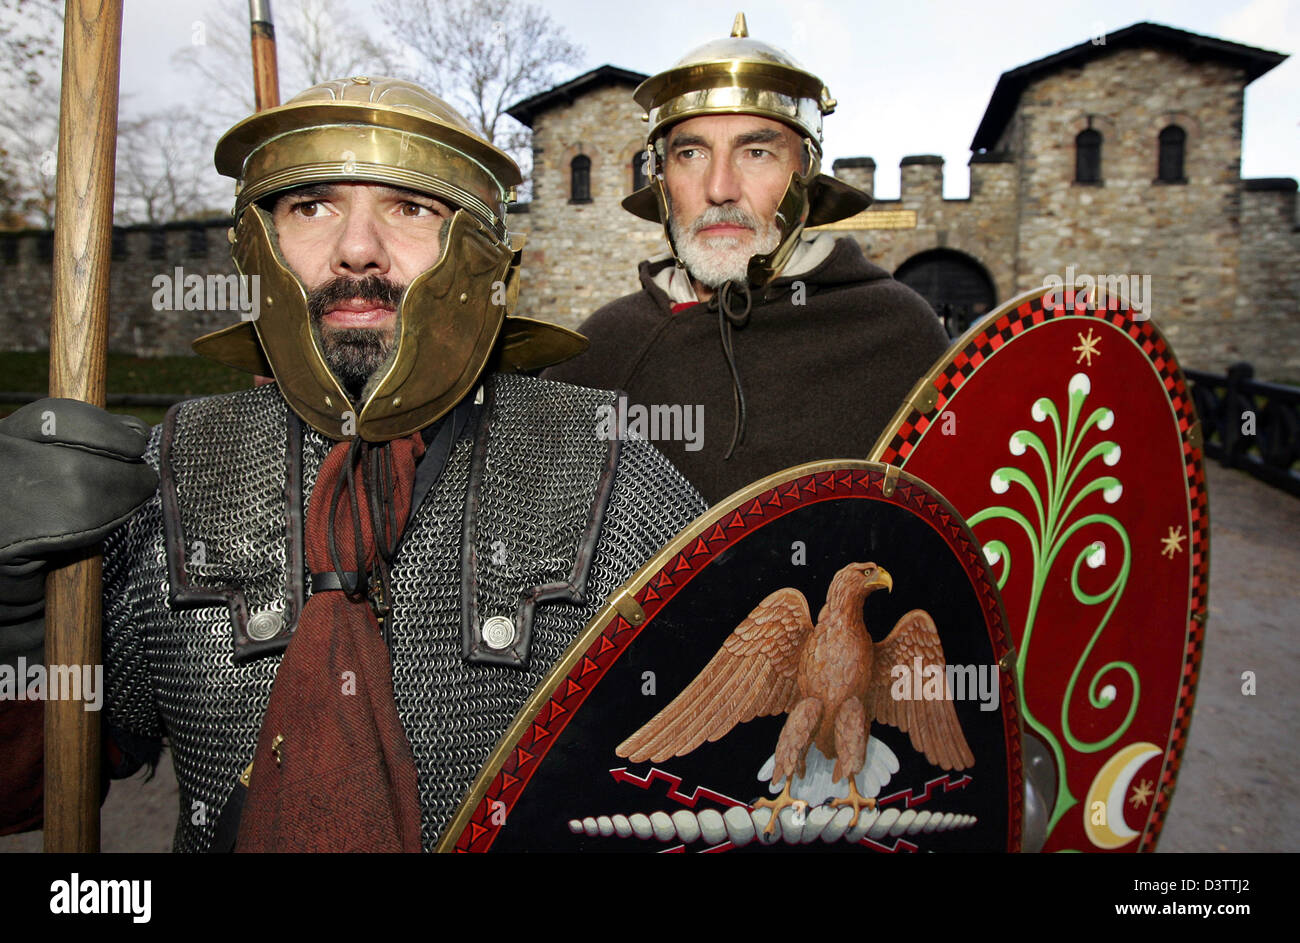 Zwei Männer im römischen Legionär Kostüme sind die Saalburg bei Bad Homburg,  Deutschland, Sonntag, 12. November 2006 abgebildet. Die Teilnehmer der  römischen Gruppe "Milites Bedenses" aus Bitburg eingerichtet haben  Winterquartier auf der